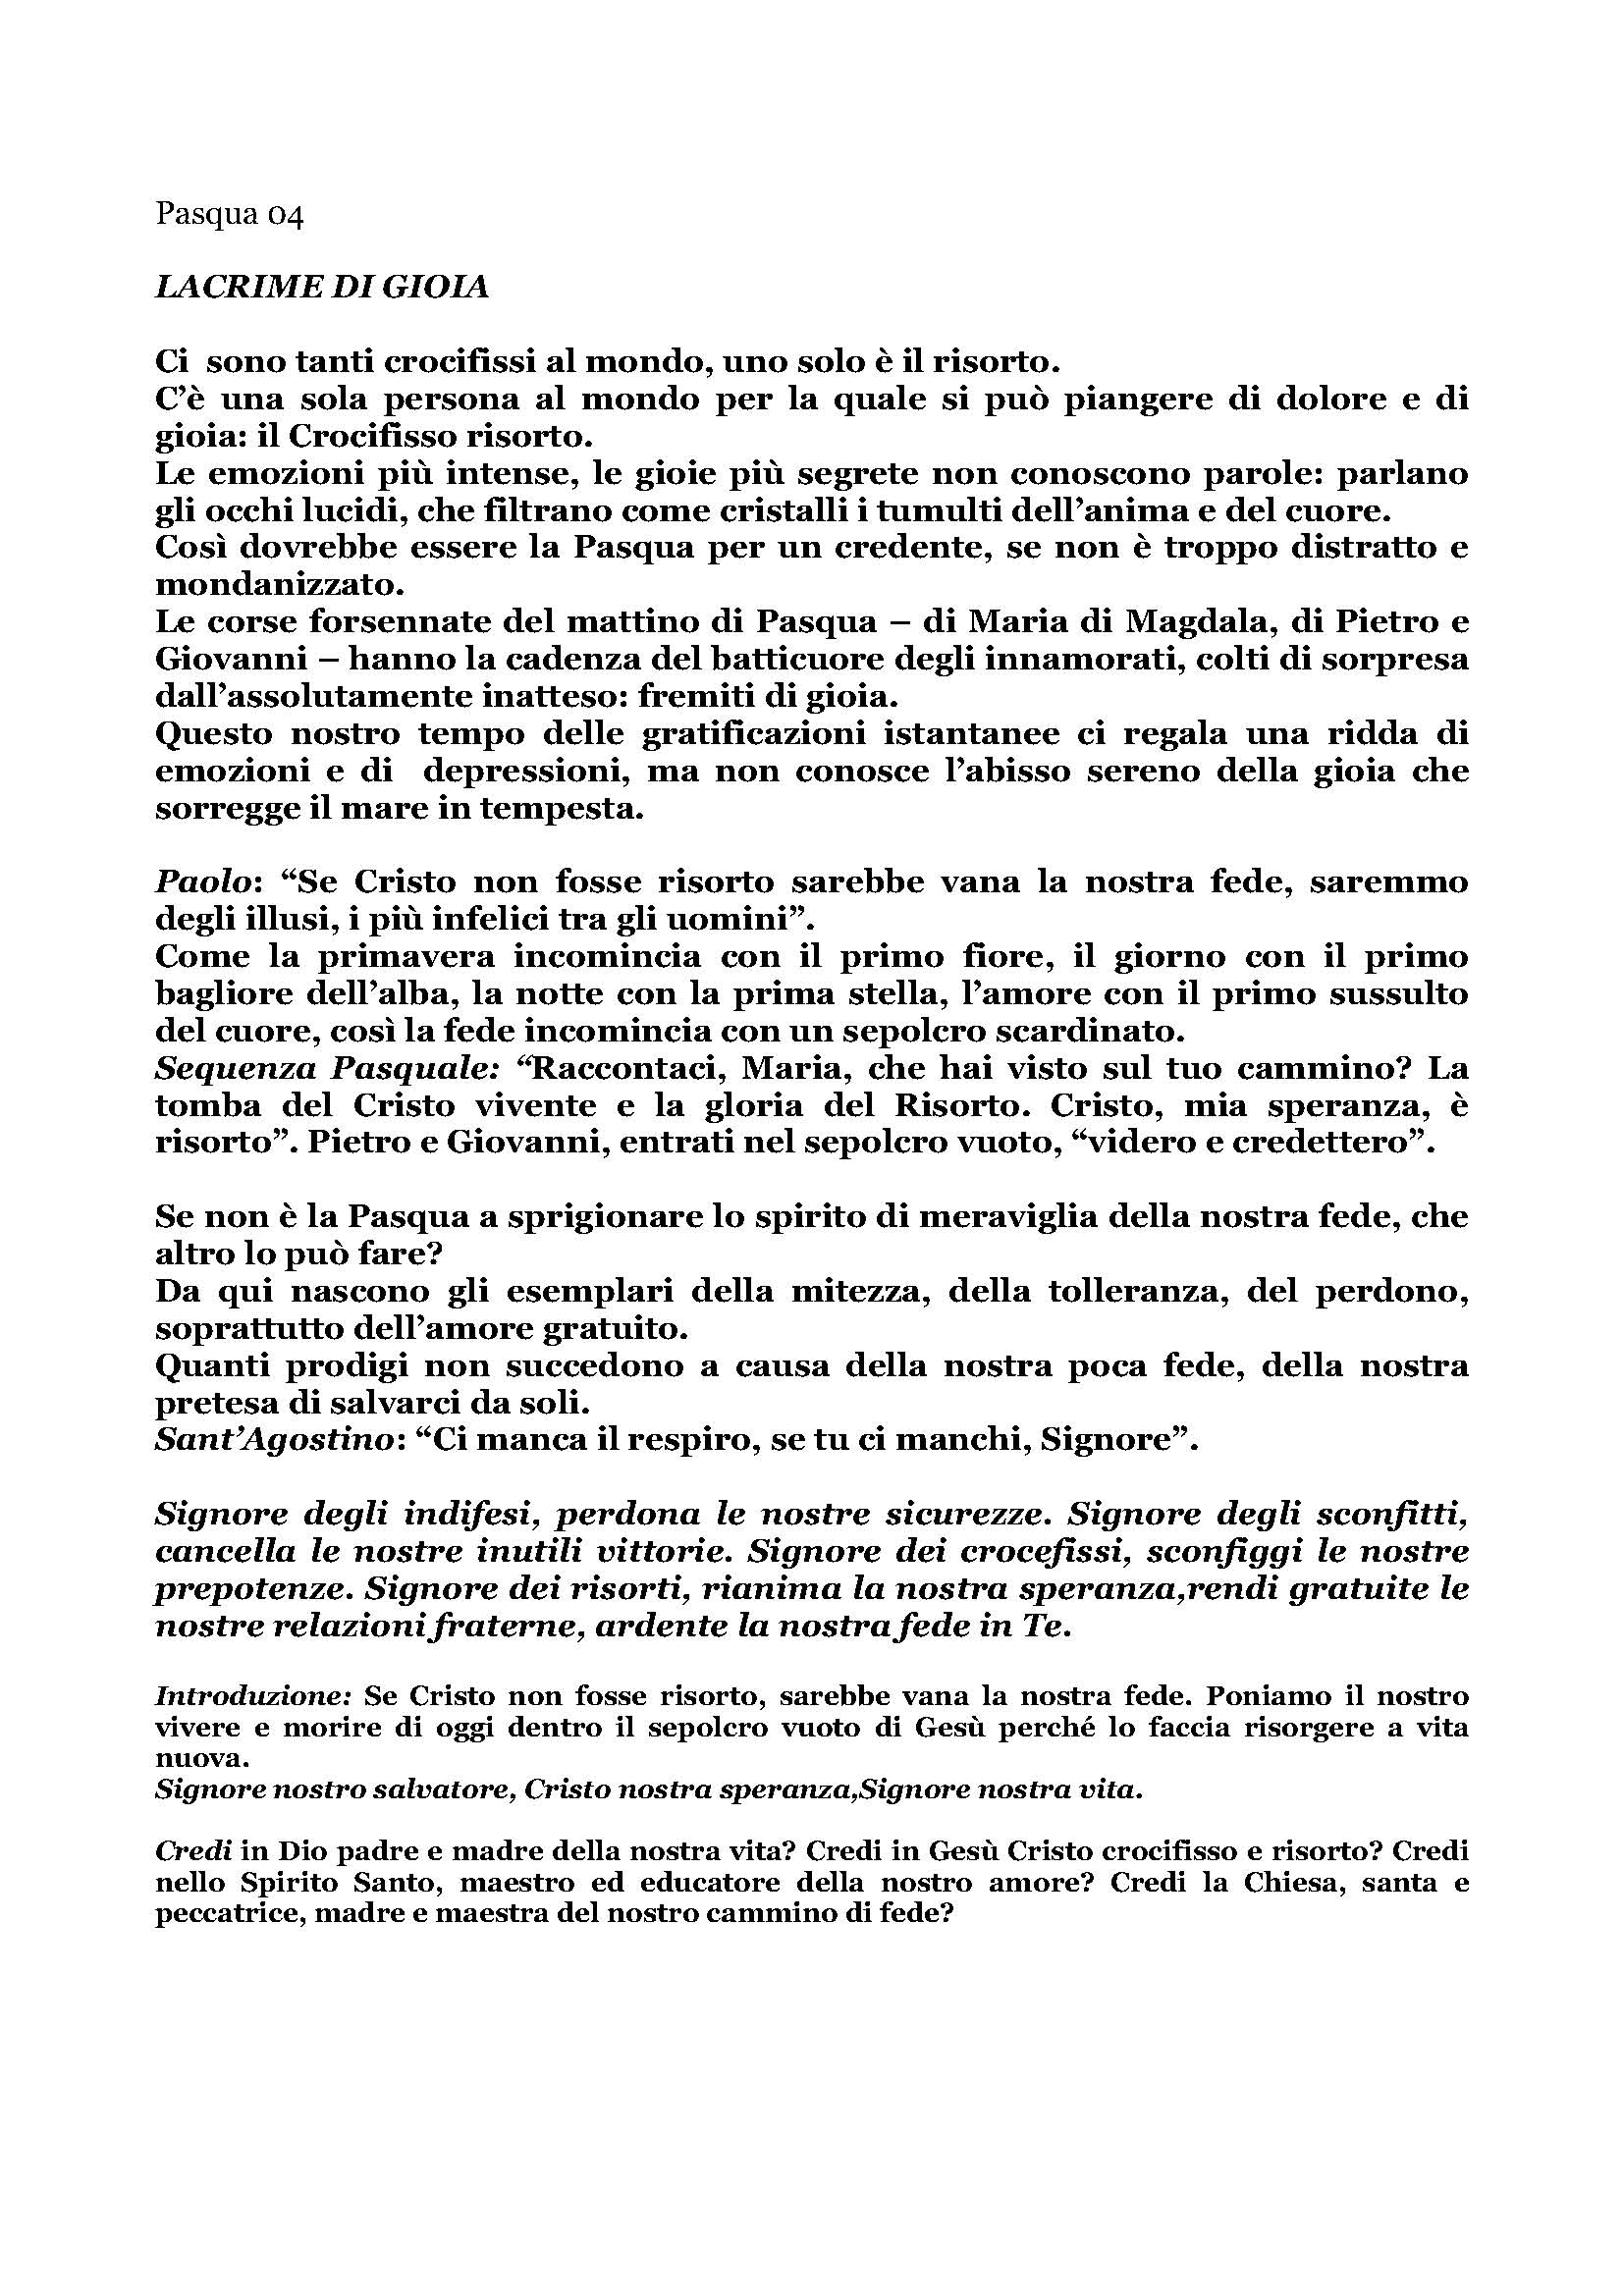 Pasqua04_Lacrime_di_gioia.pdf